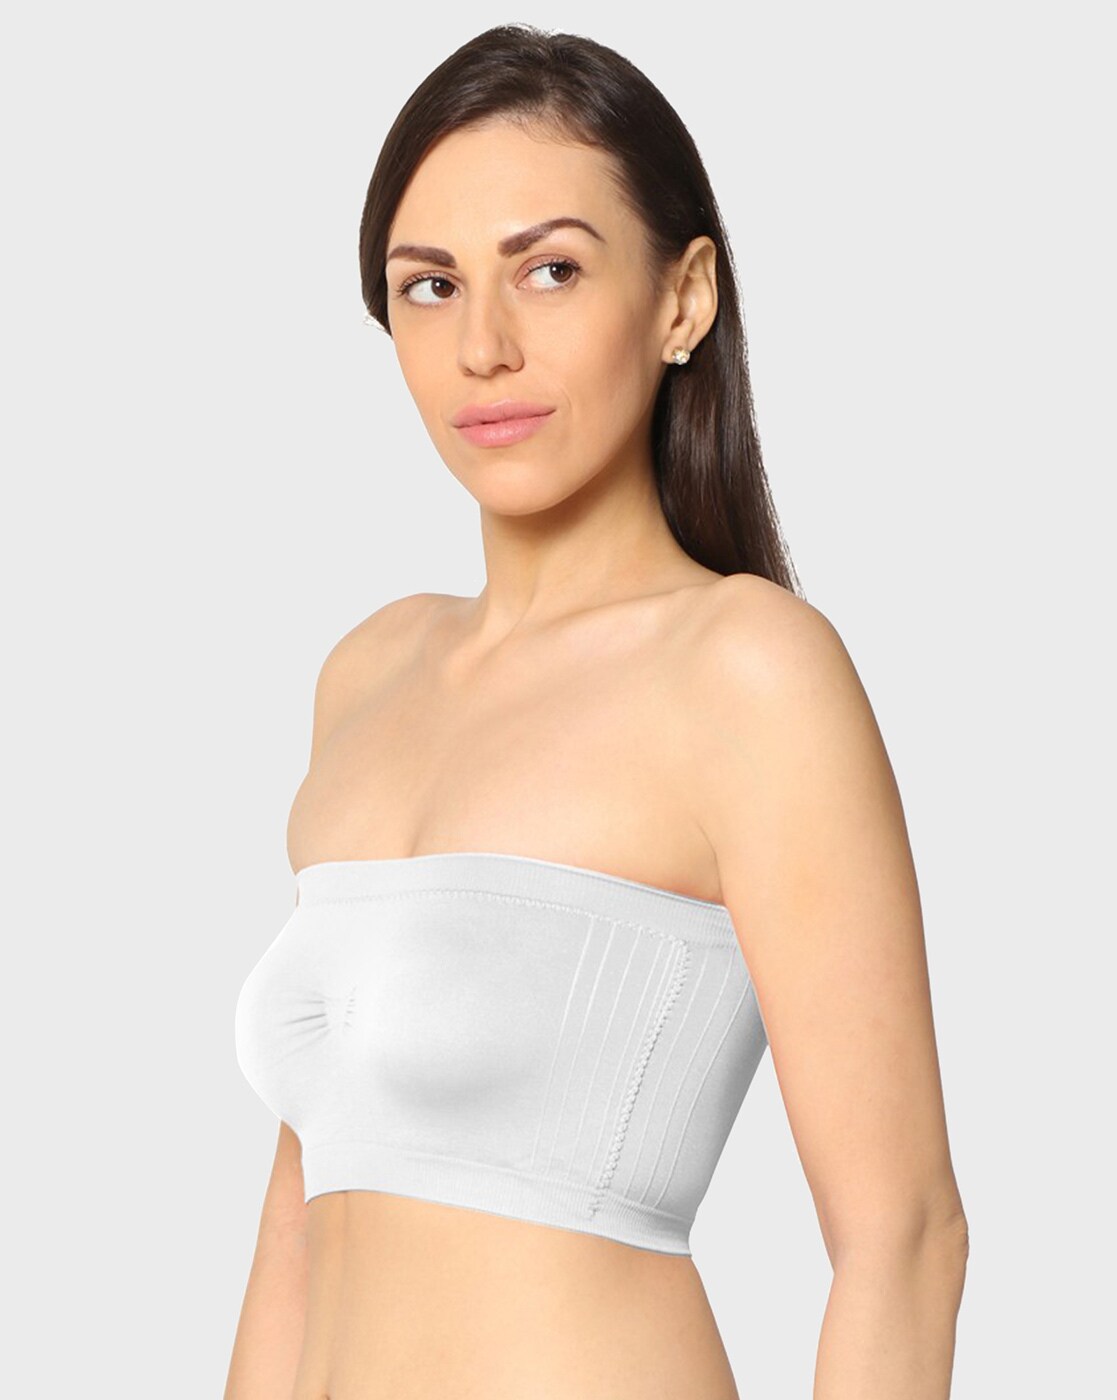 Buy White Bras for Women by KAVYA Online